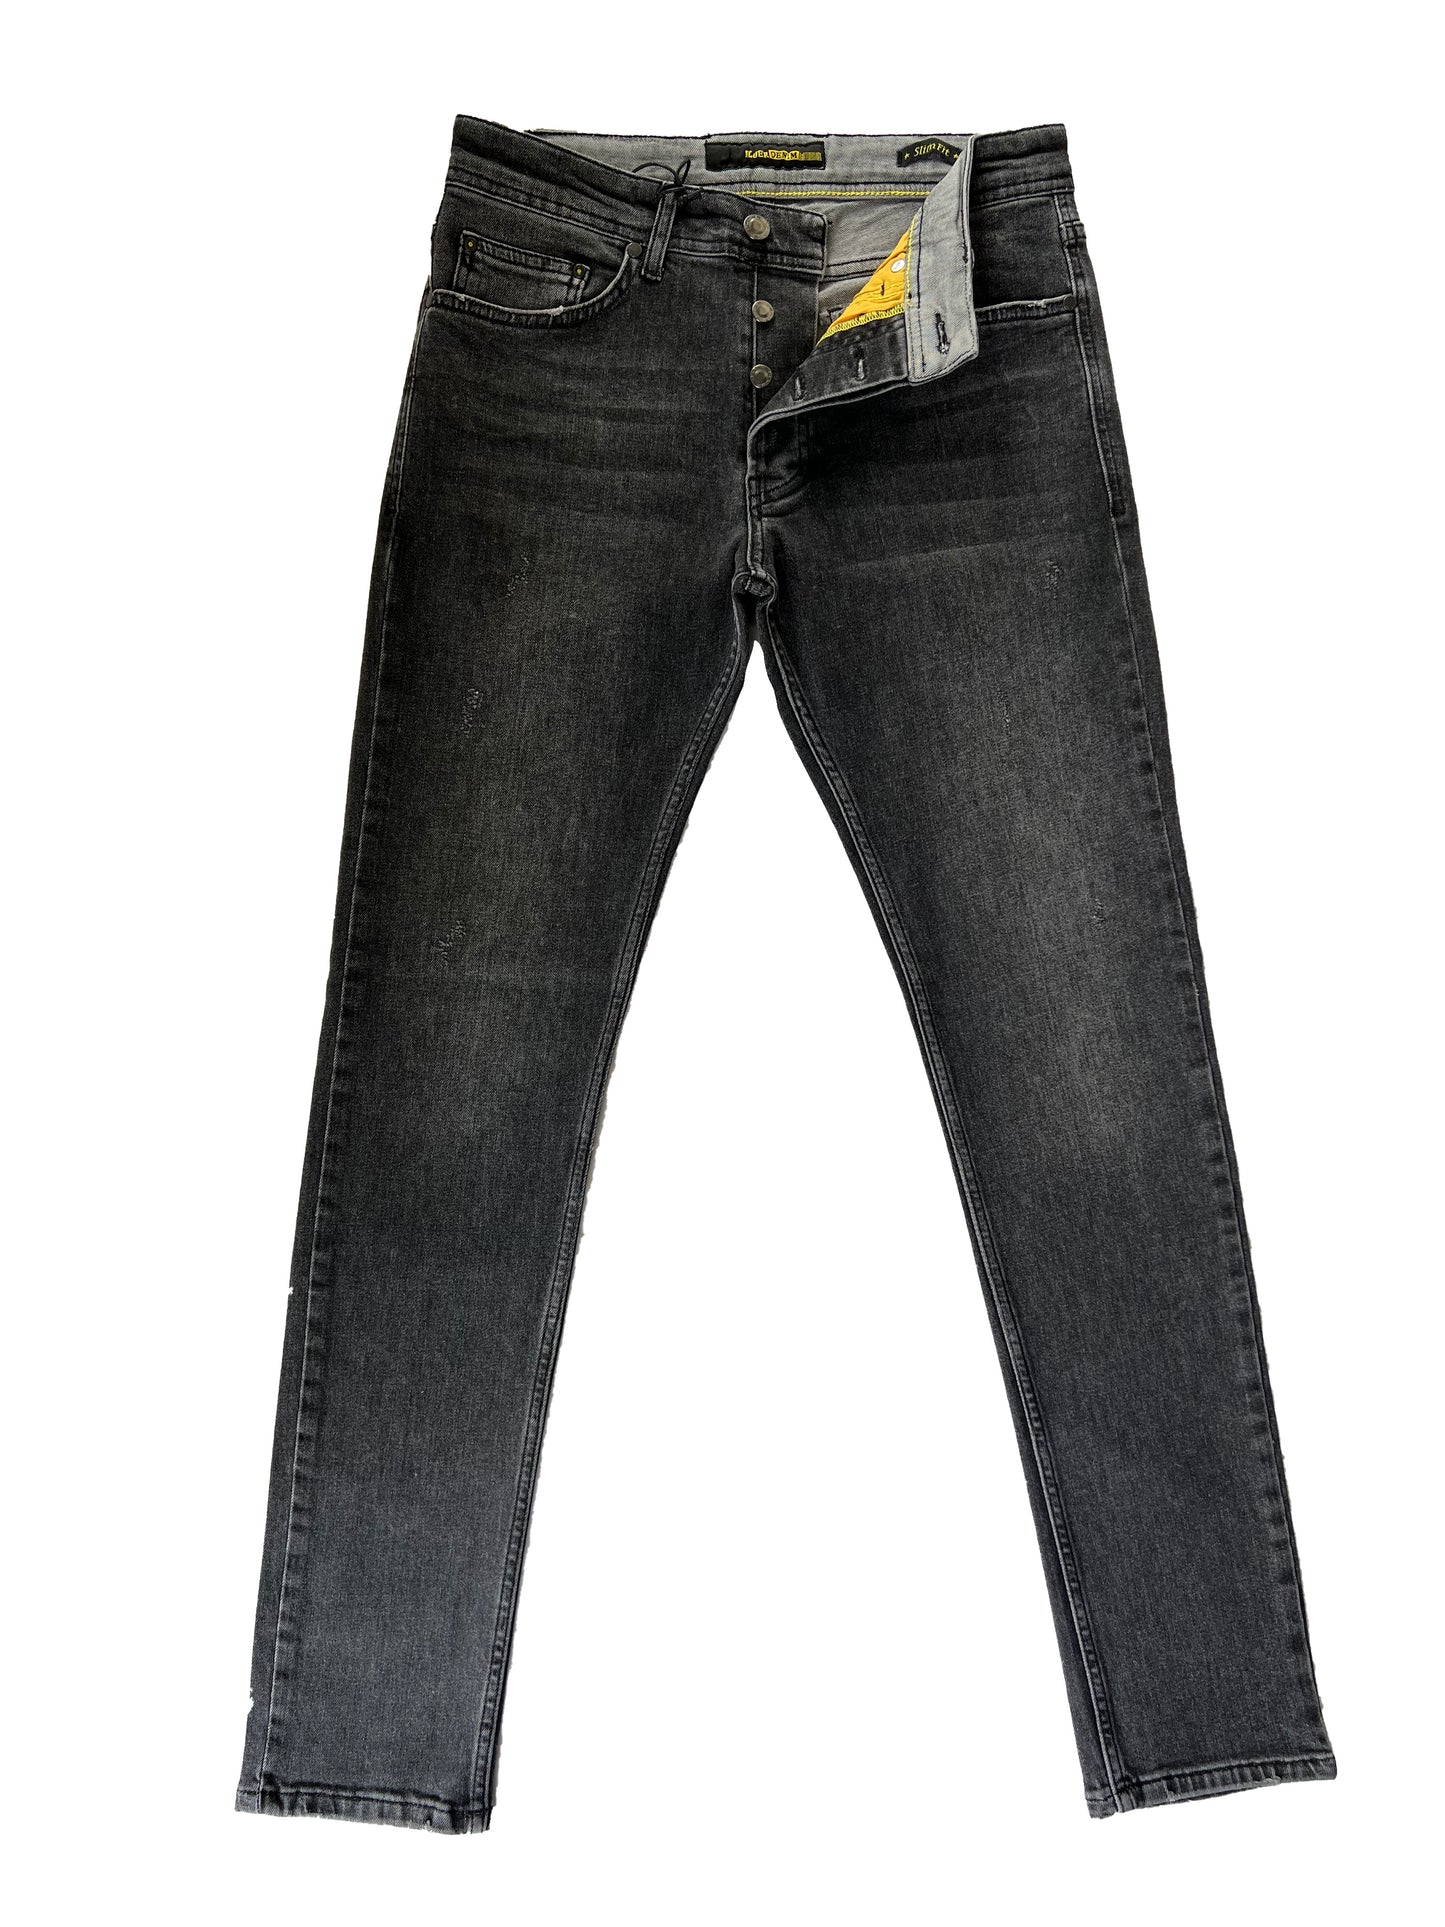 Jeans et pantalons confortables coupe ajustée pour hommes - York 